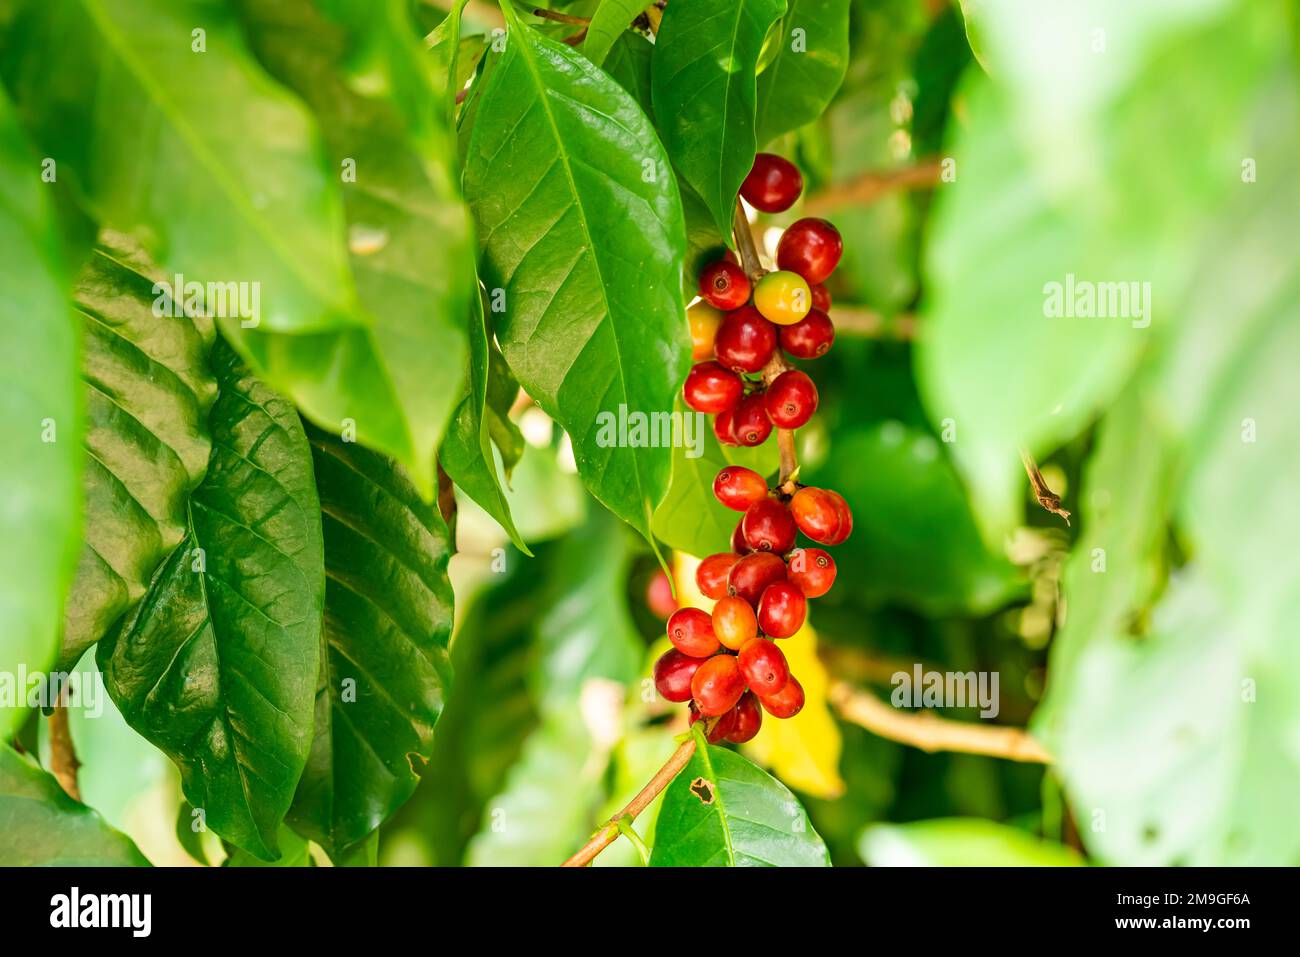 Vue rapprochée bouquet de cerises mûres de café arabica ou de baies de café arabica accrochées dans une branche d'un arbre. Banque D'Images